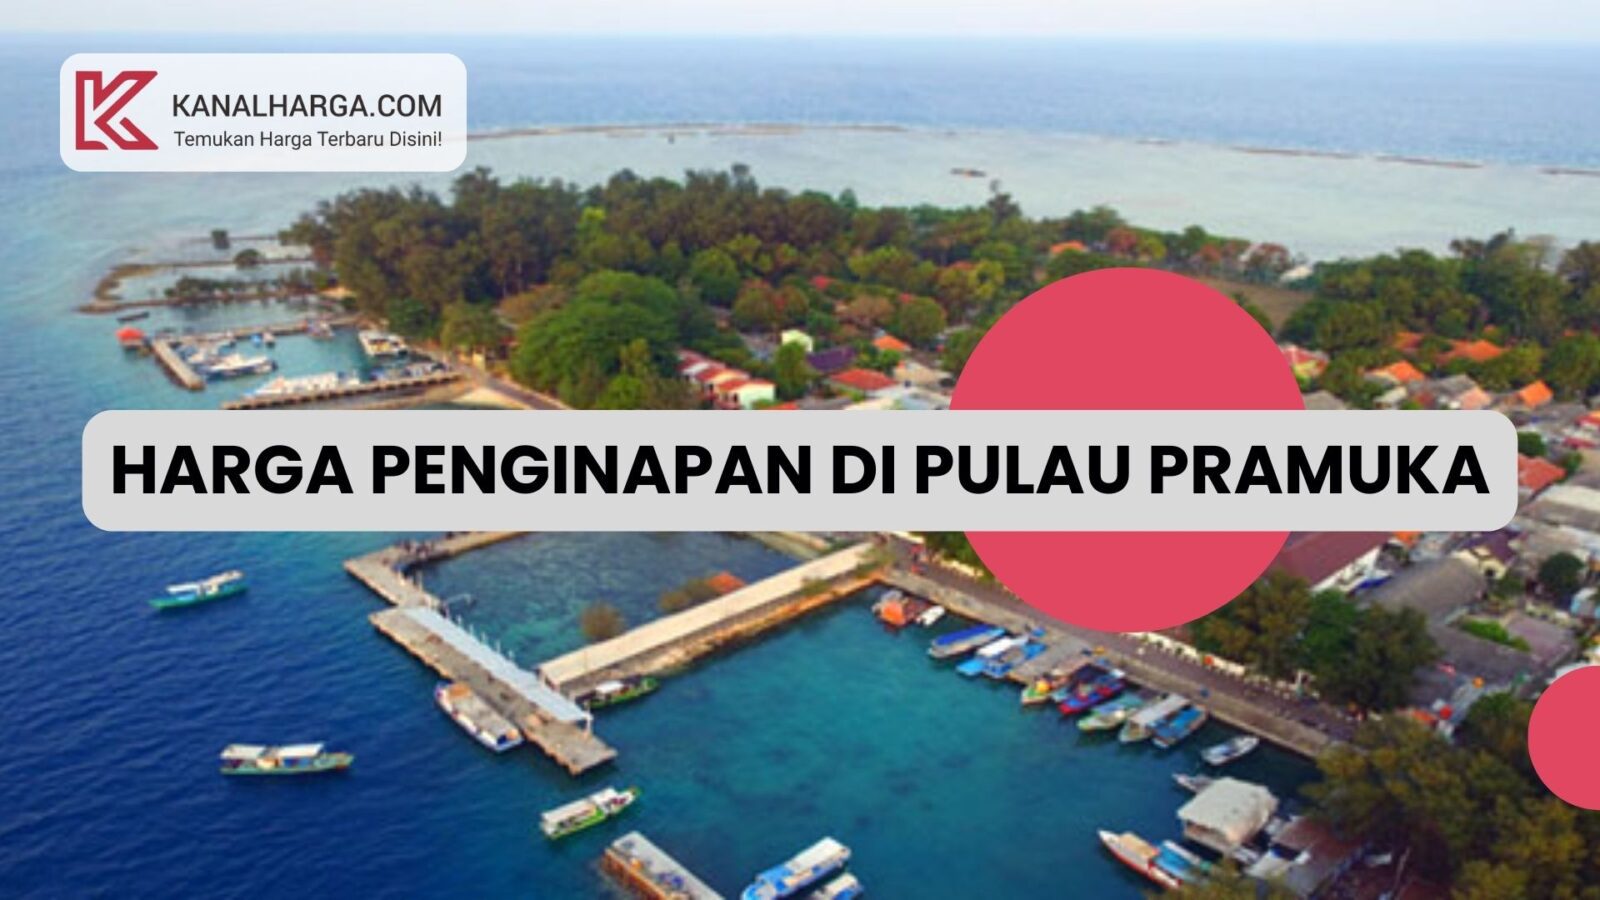 Harga Penginapan di Pulau Pramuka Harga Penginapan di Pulau Pramuka